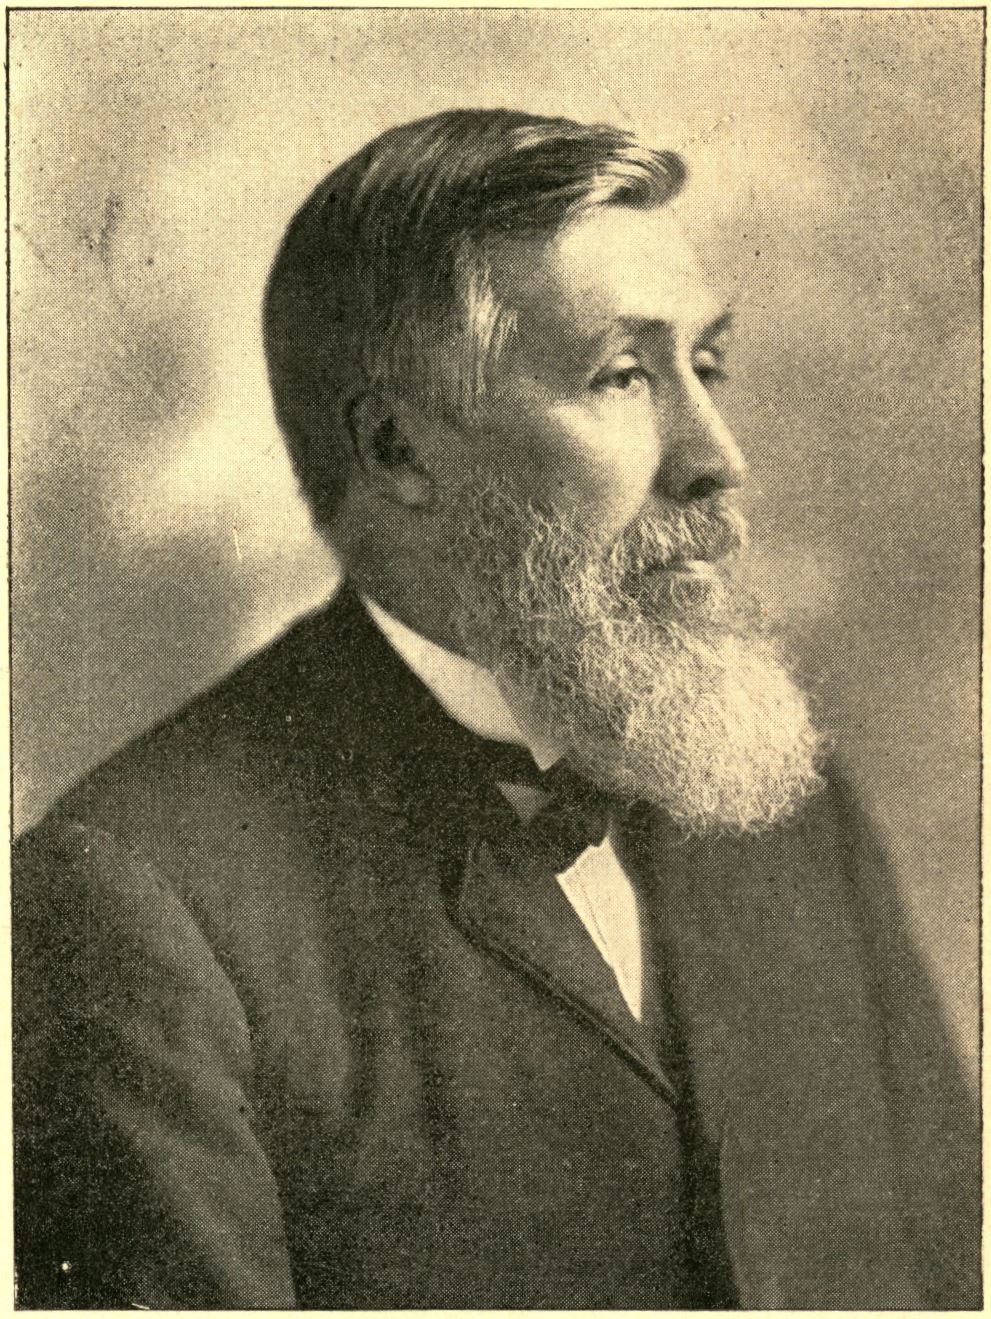 Carter, John William, 1836-1907